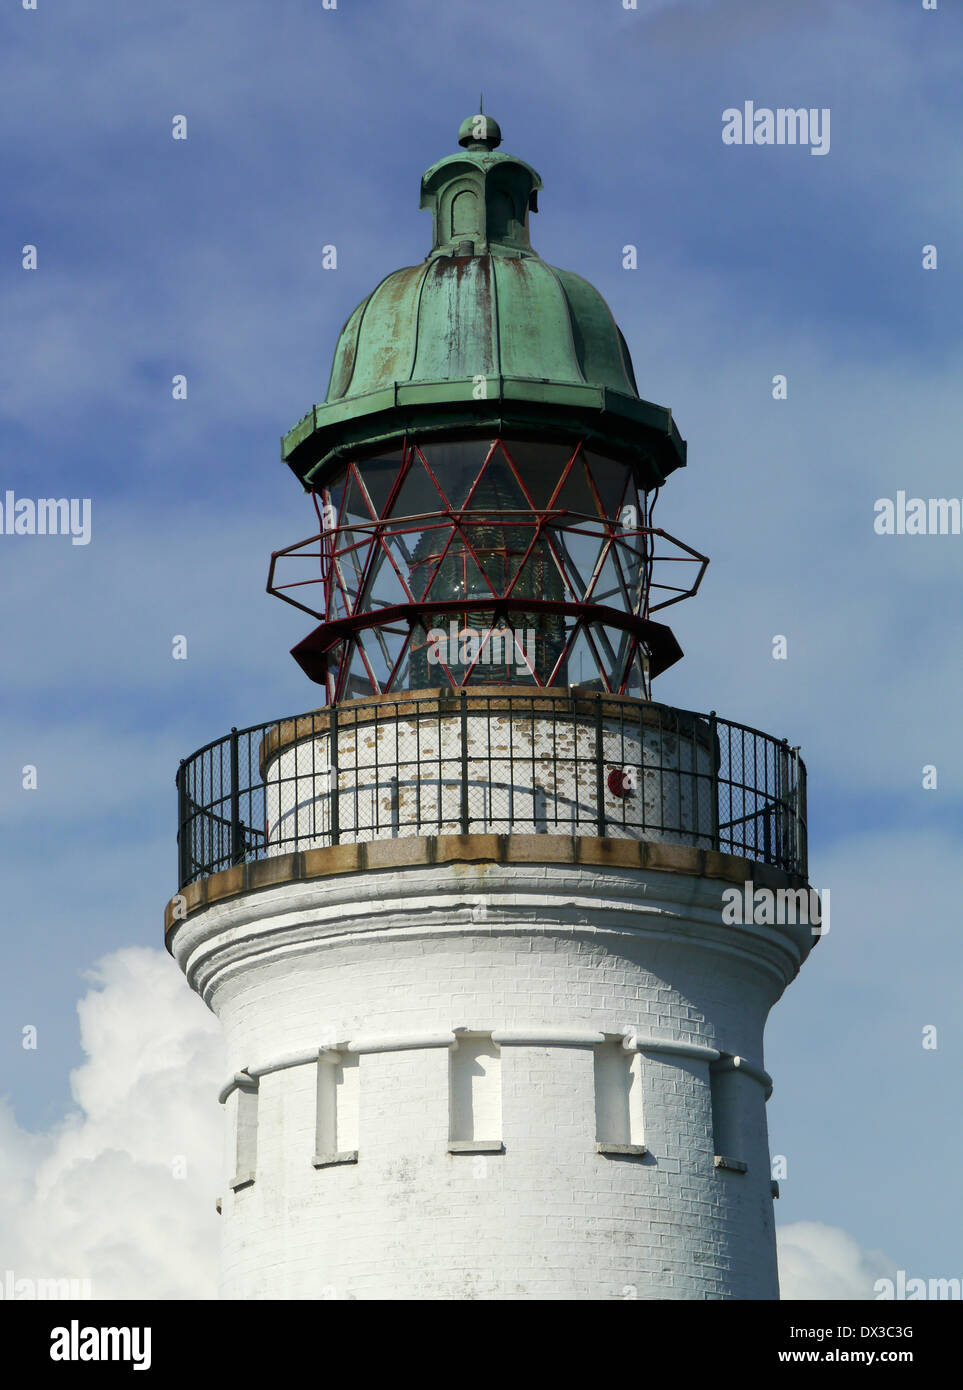 Ary stevns klint stevns, phare, la Nouvelle-Zélande, le Danemark Banque D'Images